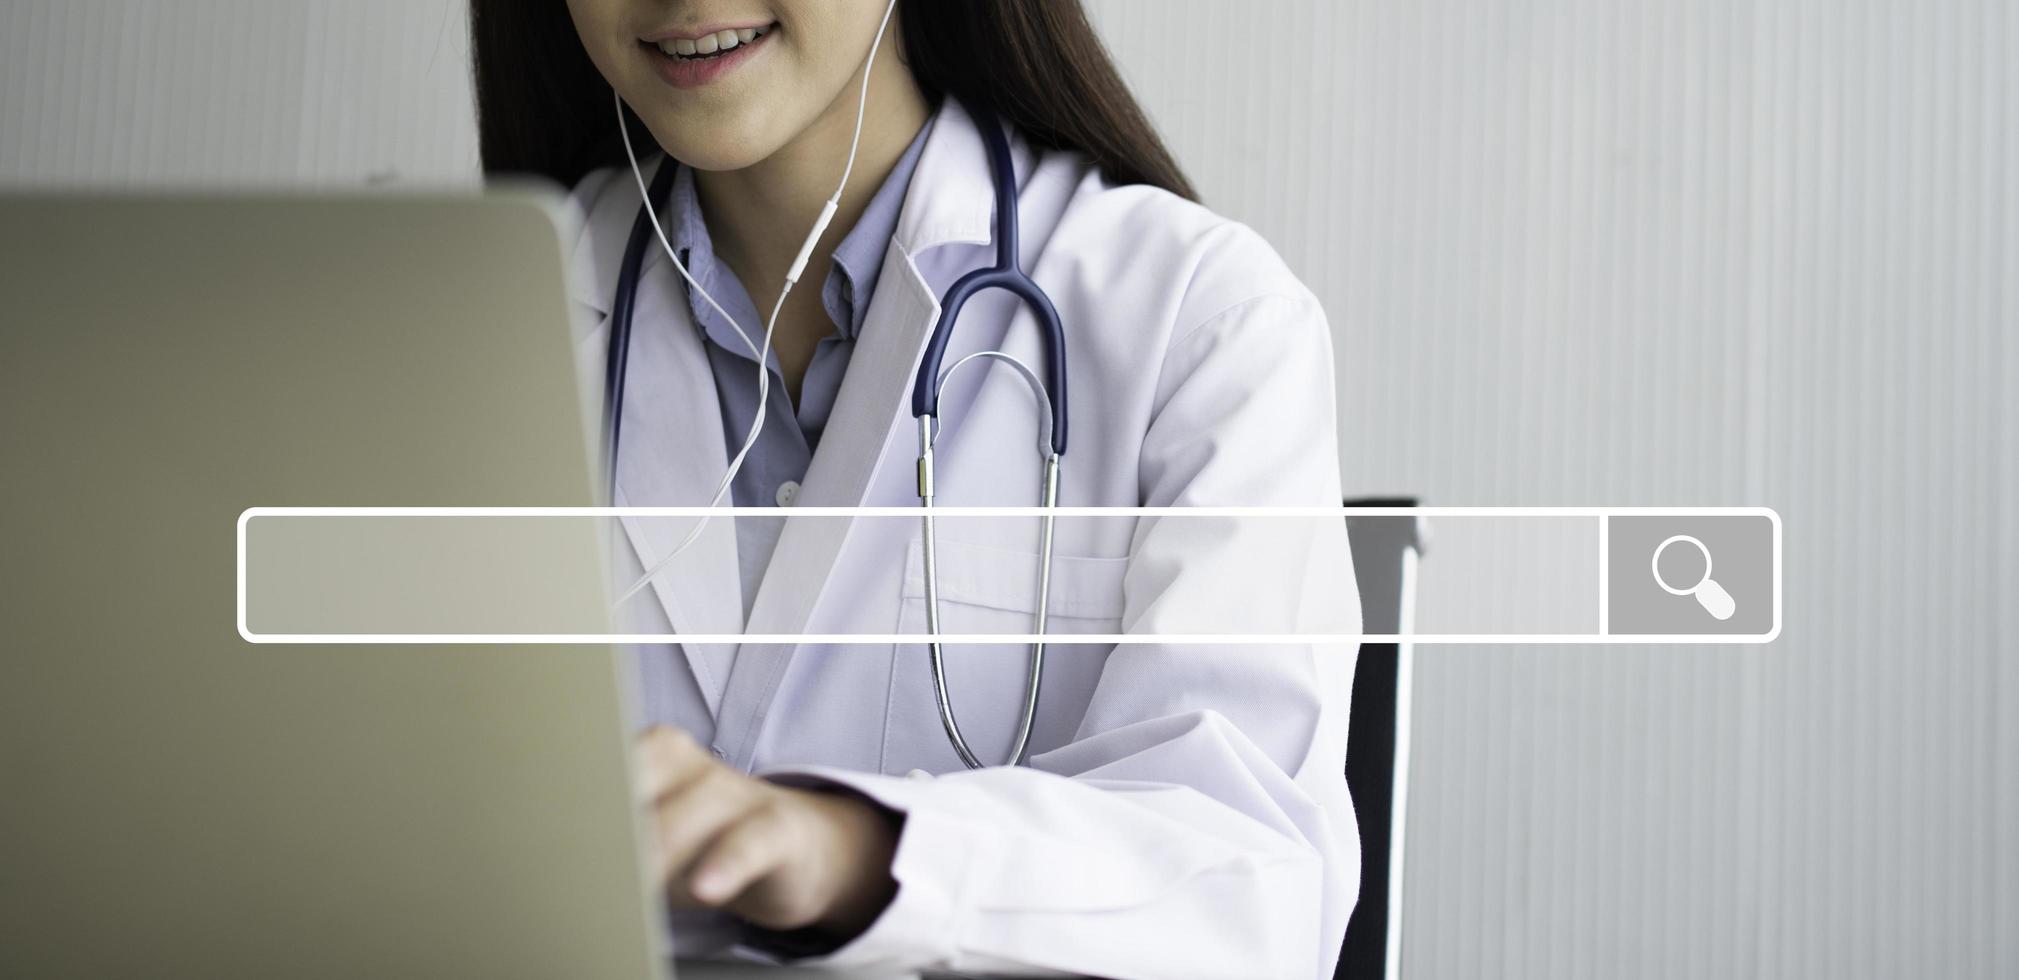 sökande bläddring internet bar på asiatisk kvinna läkare är uppkopplad besöker med en patient bakgrund, begrepp av sökande bläddring internet data information nätverkande för medicinsk och sjukvård foto